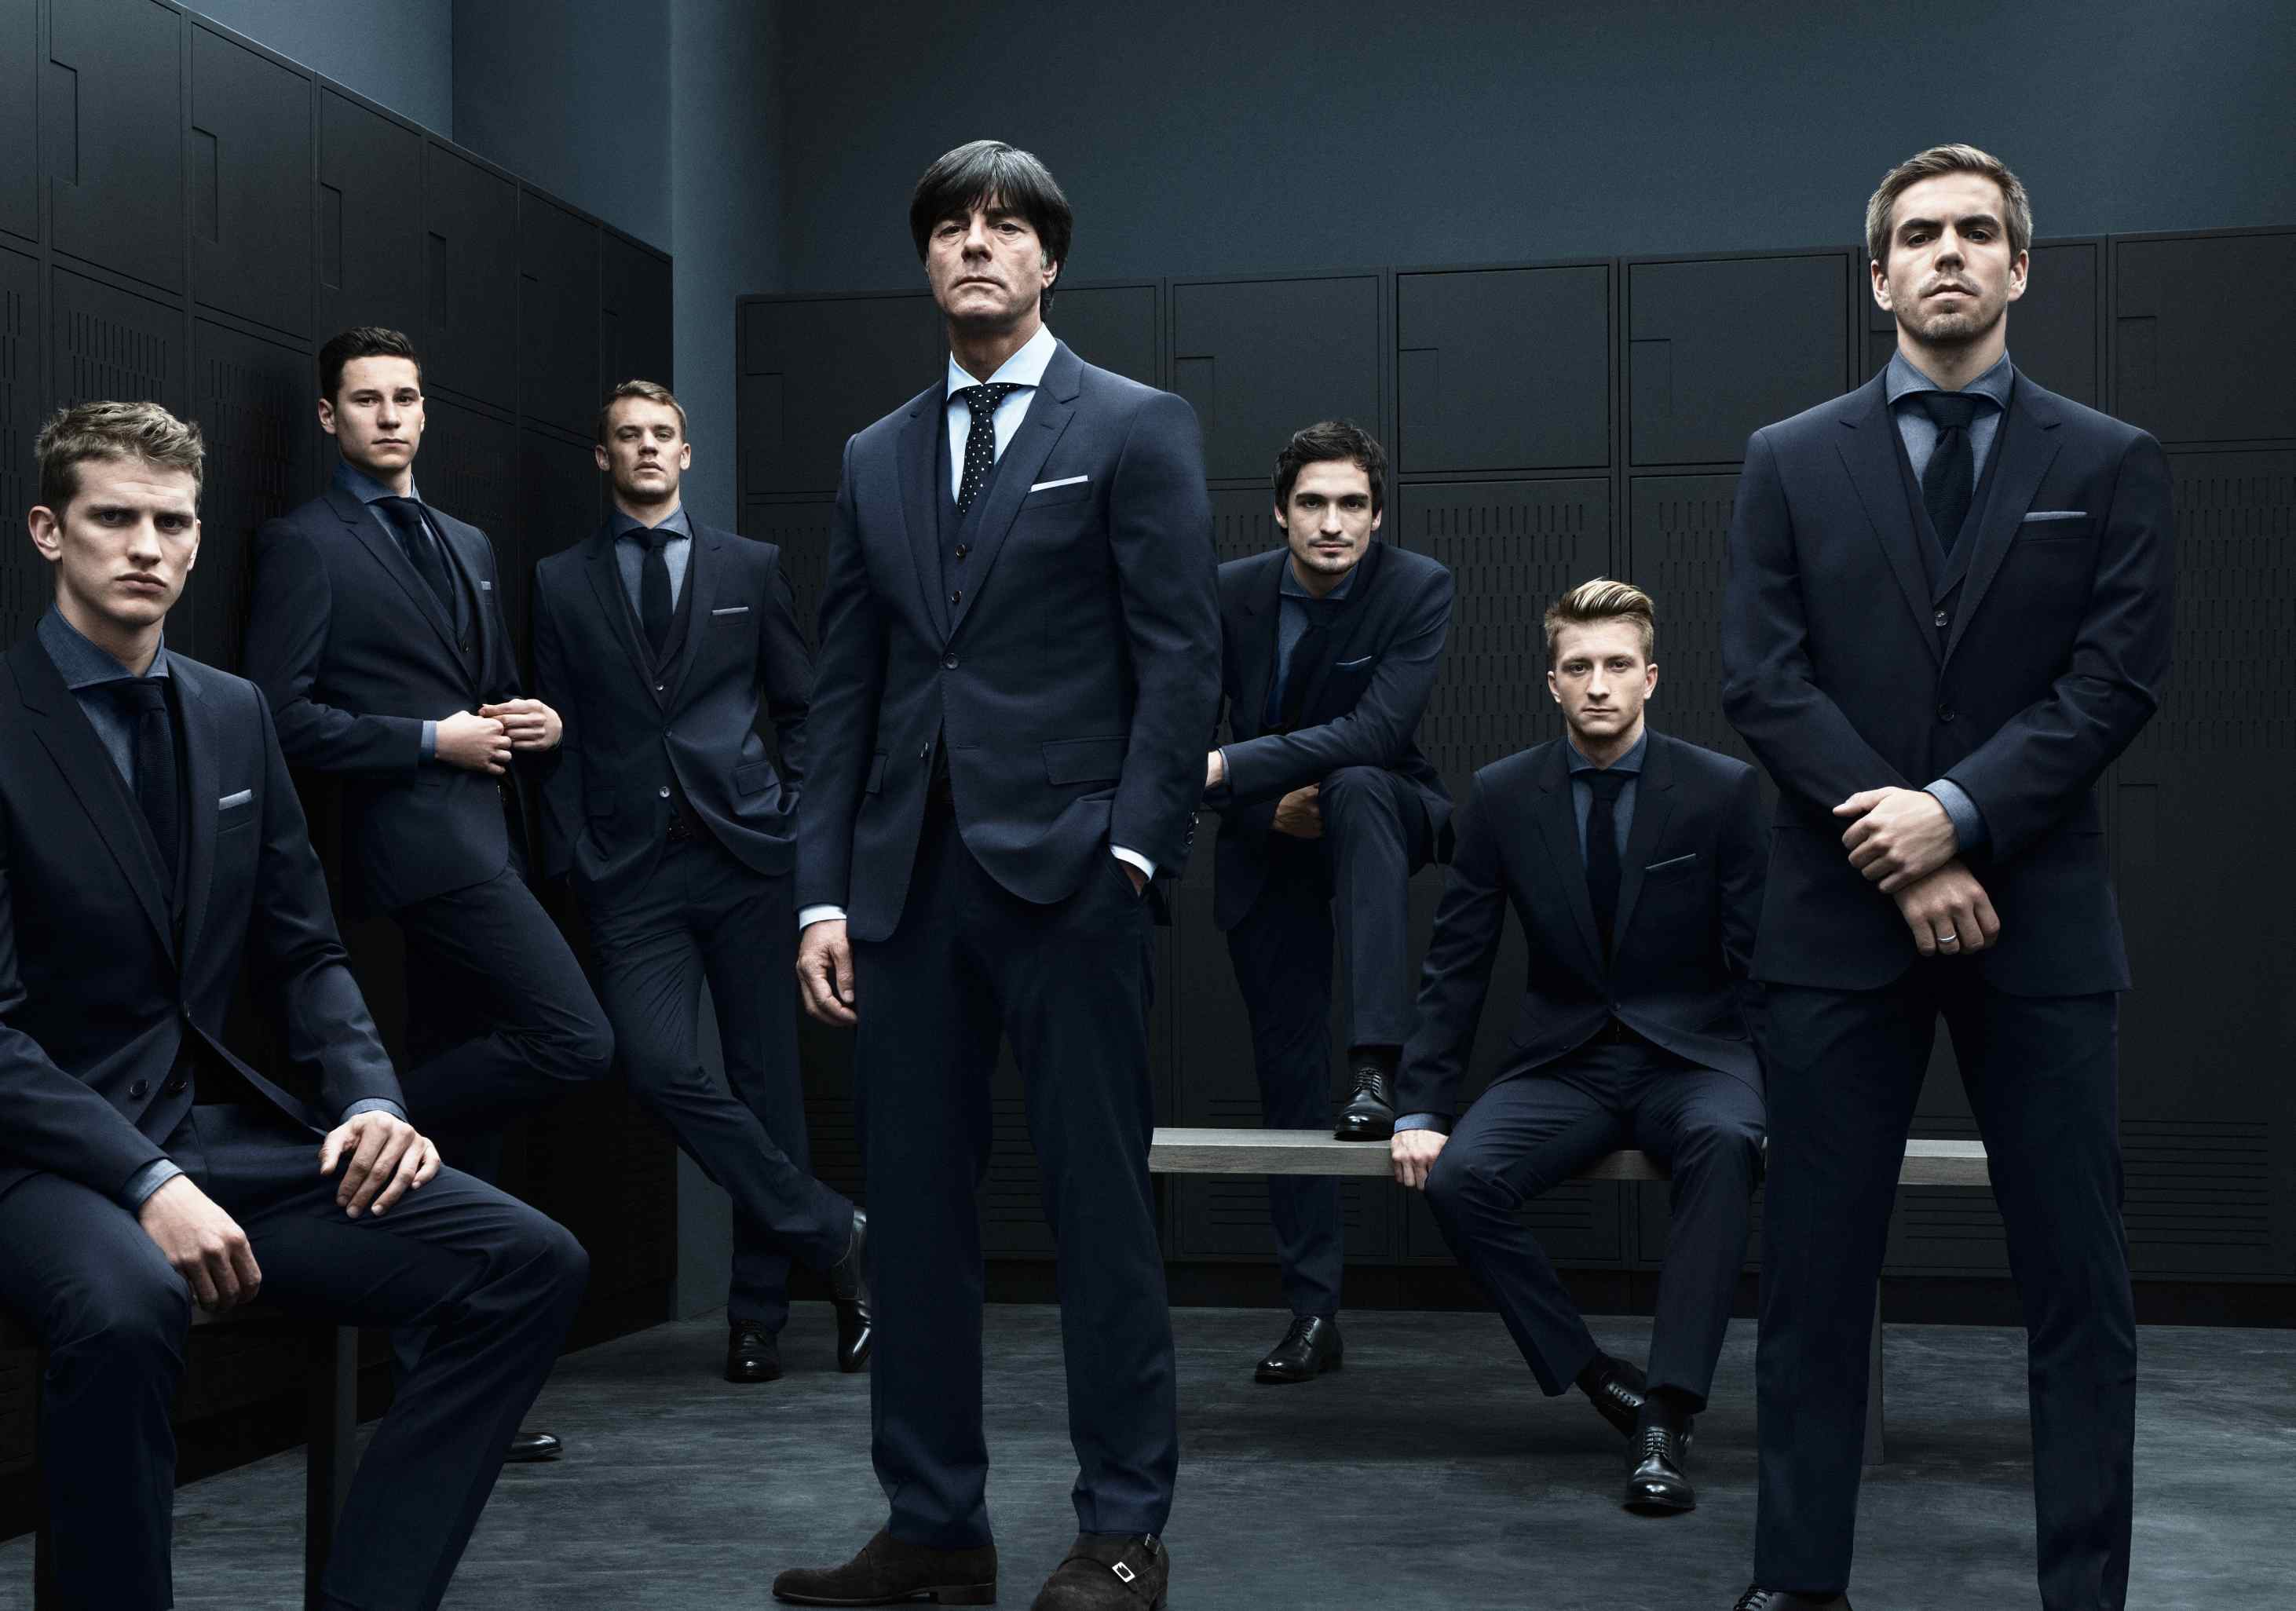 Мужчина 5 из 10. Сборная Германии по футболу Hugo Boss. Сборная Германии по футболу в костюмах Hugo Boss. Несколько мужчин в костюмах. Пять мужчин в костюмах.